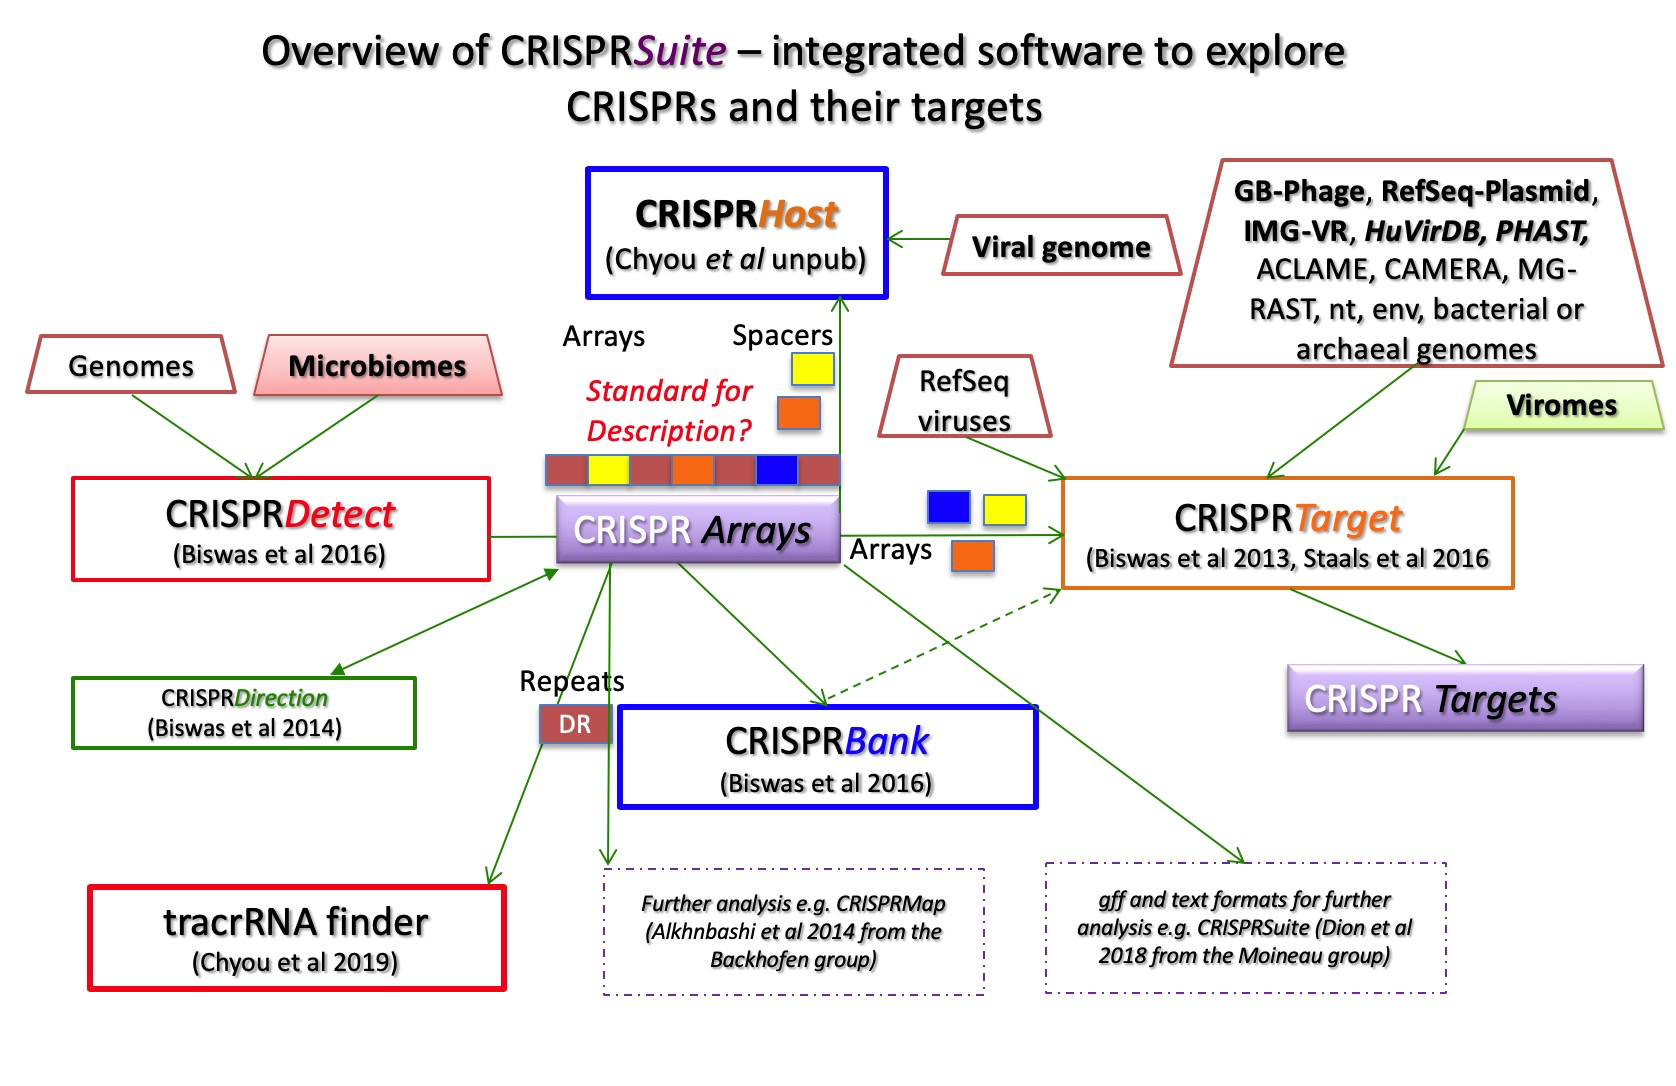 CRISPRSuite